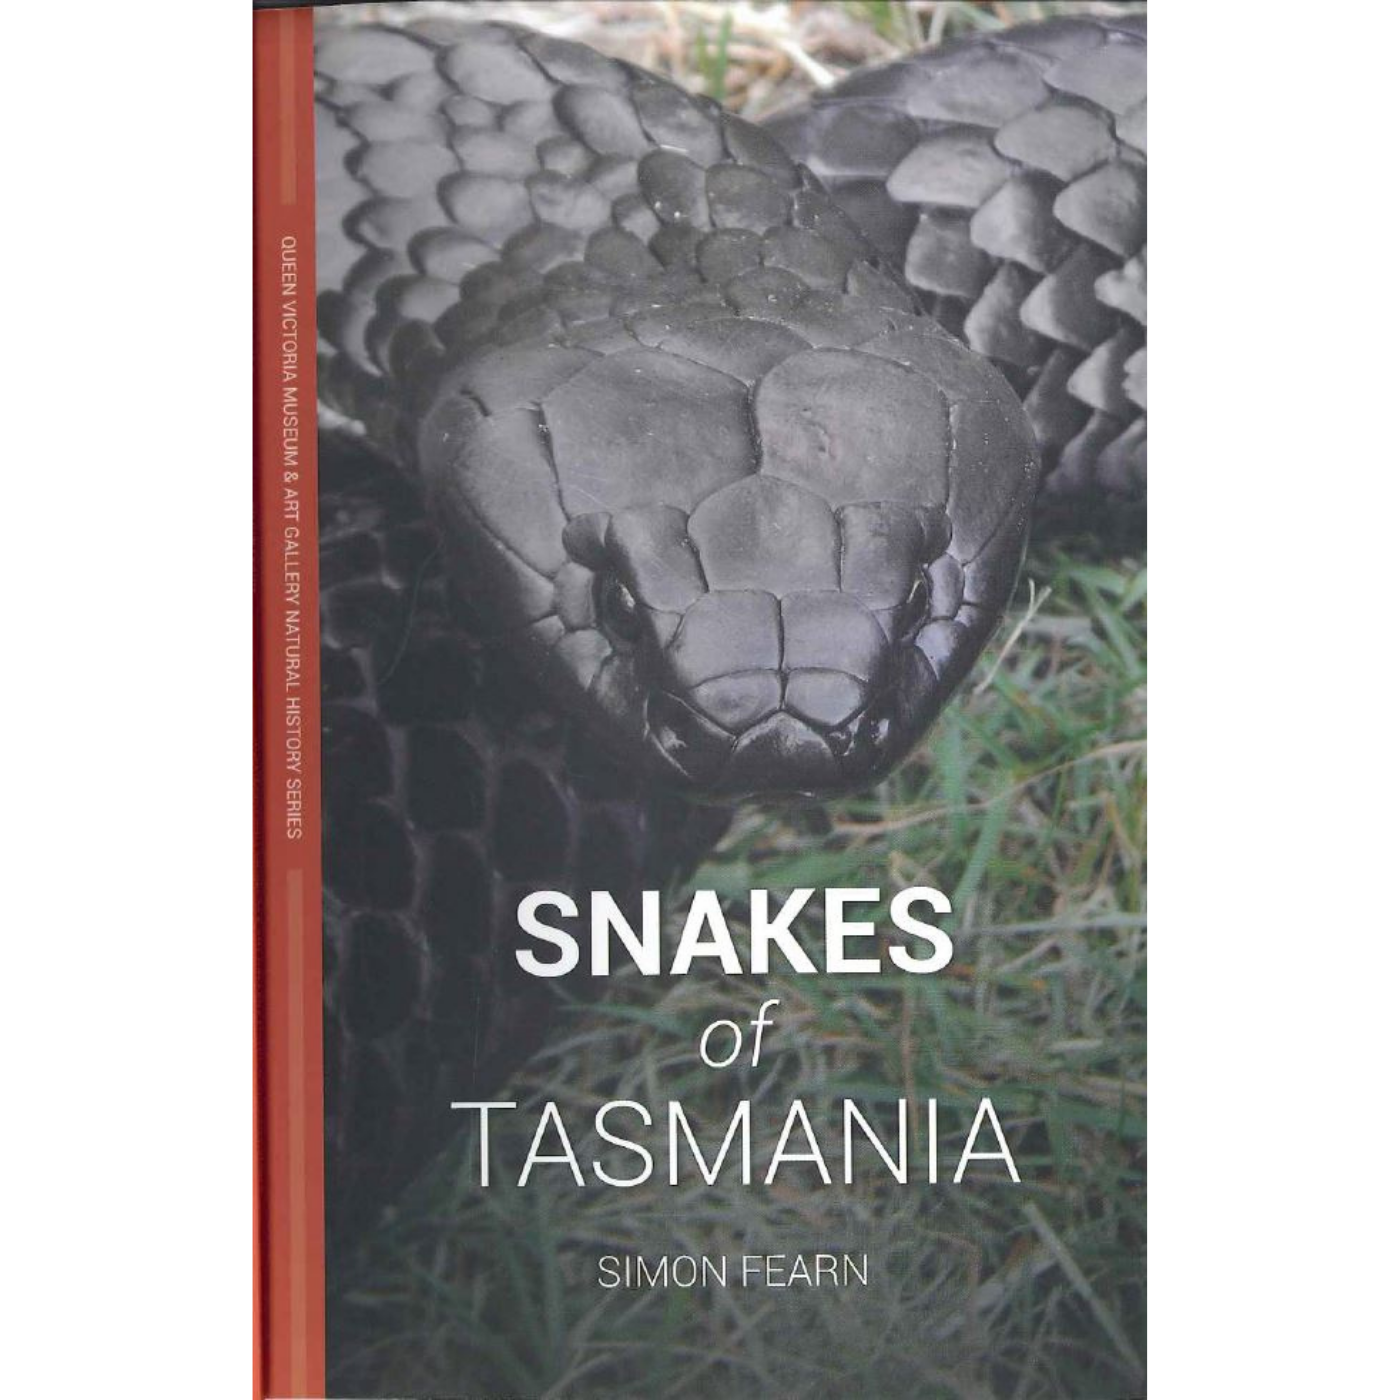 Snakes of Tasmania